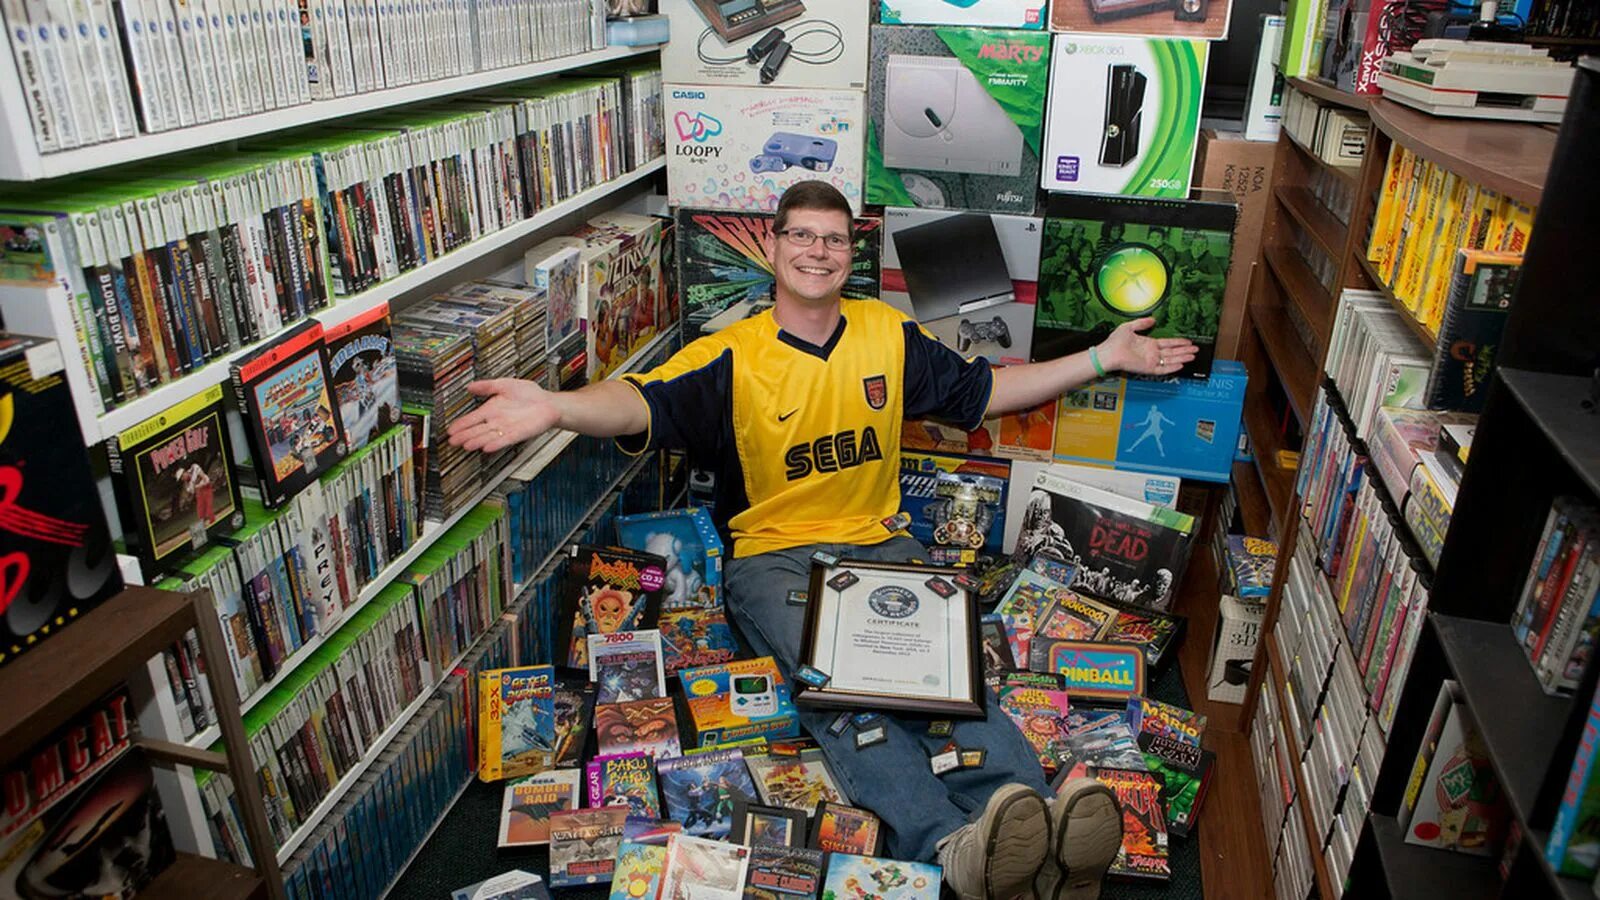 Франшиза компьютерной игры. Самая большая коллекция игр. Коллекционер игровых приставок. Коллекционирование компьютерных игр. Самая большая коллекция видеоигр в мире.